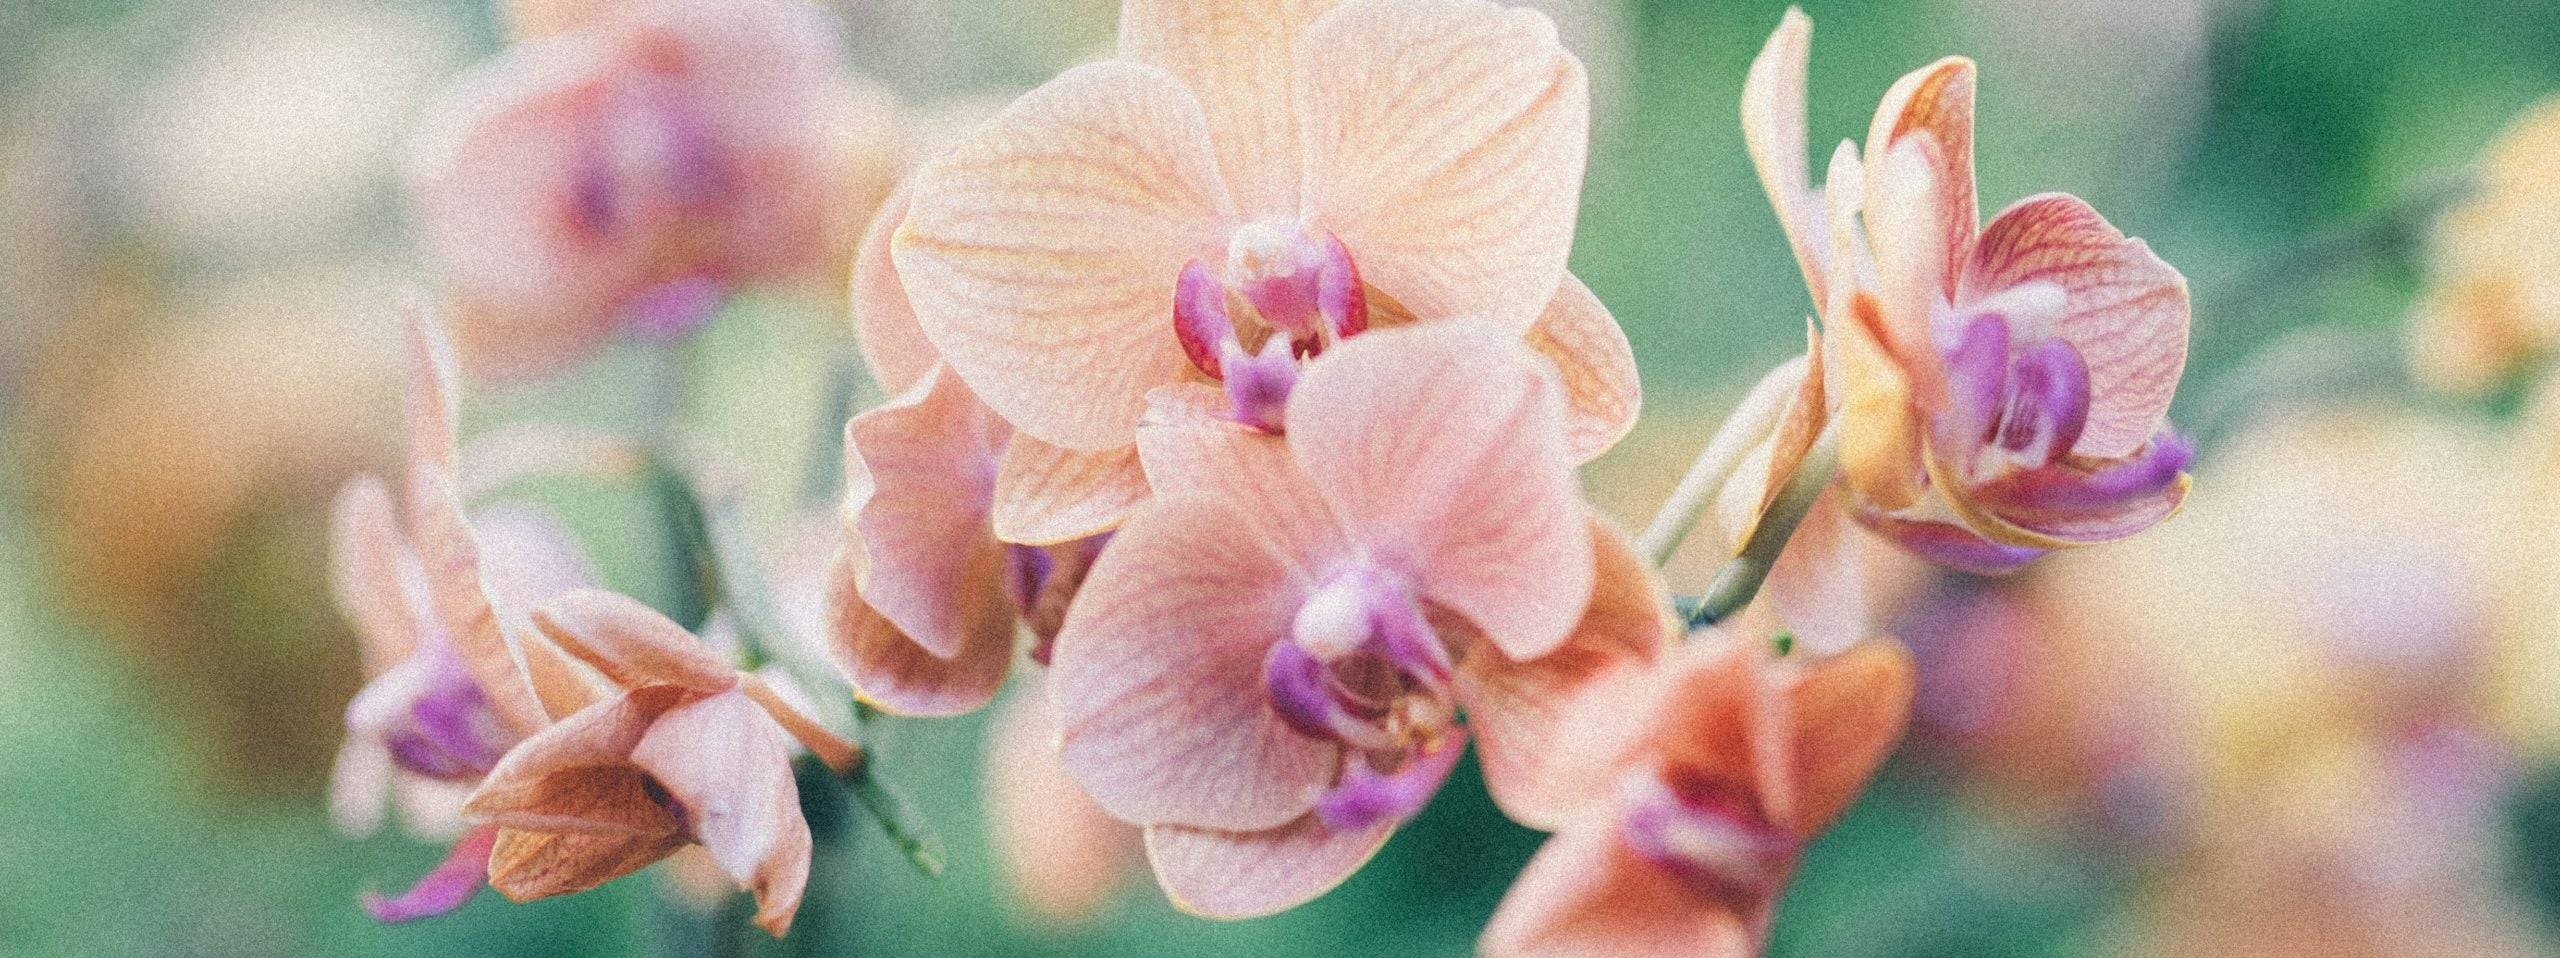 Orchideen Pflege: Die besten Tipps und Tricks für eine lange Blüte-Botanicly